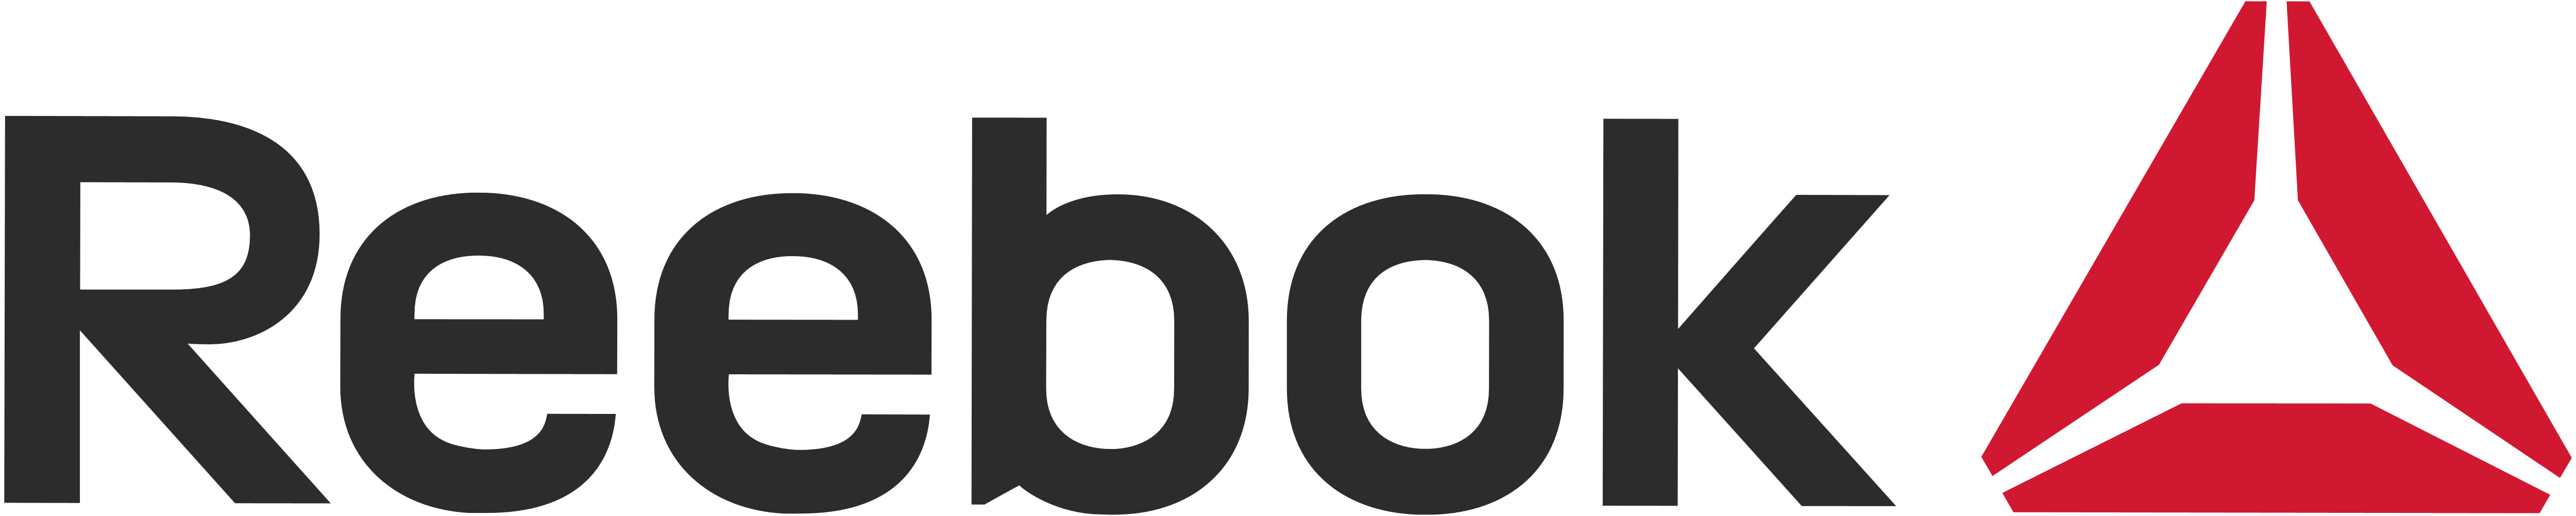 Reebok Logo png